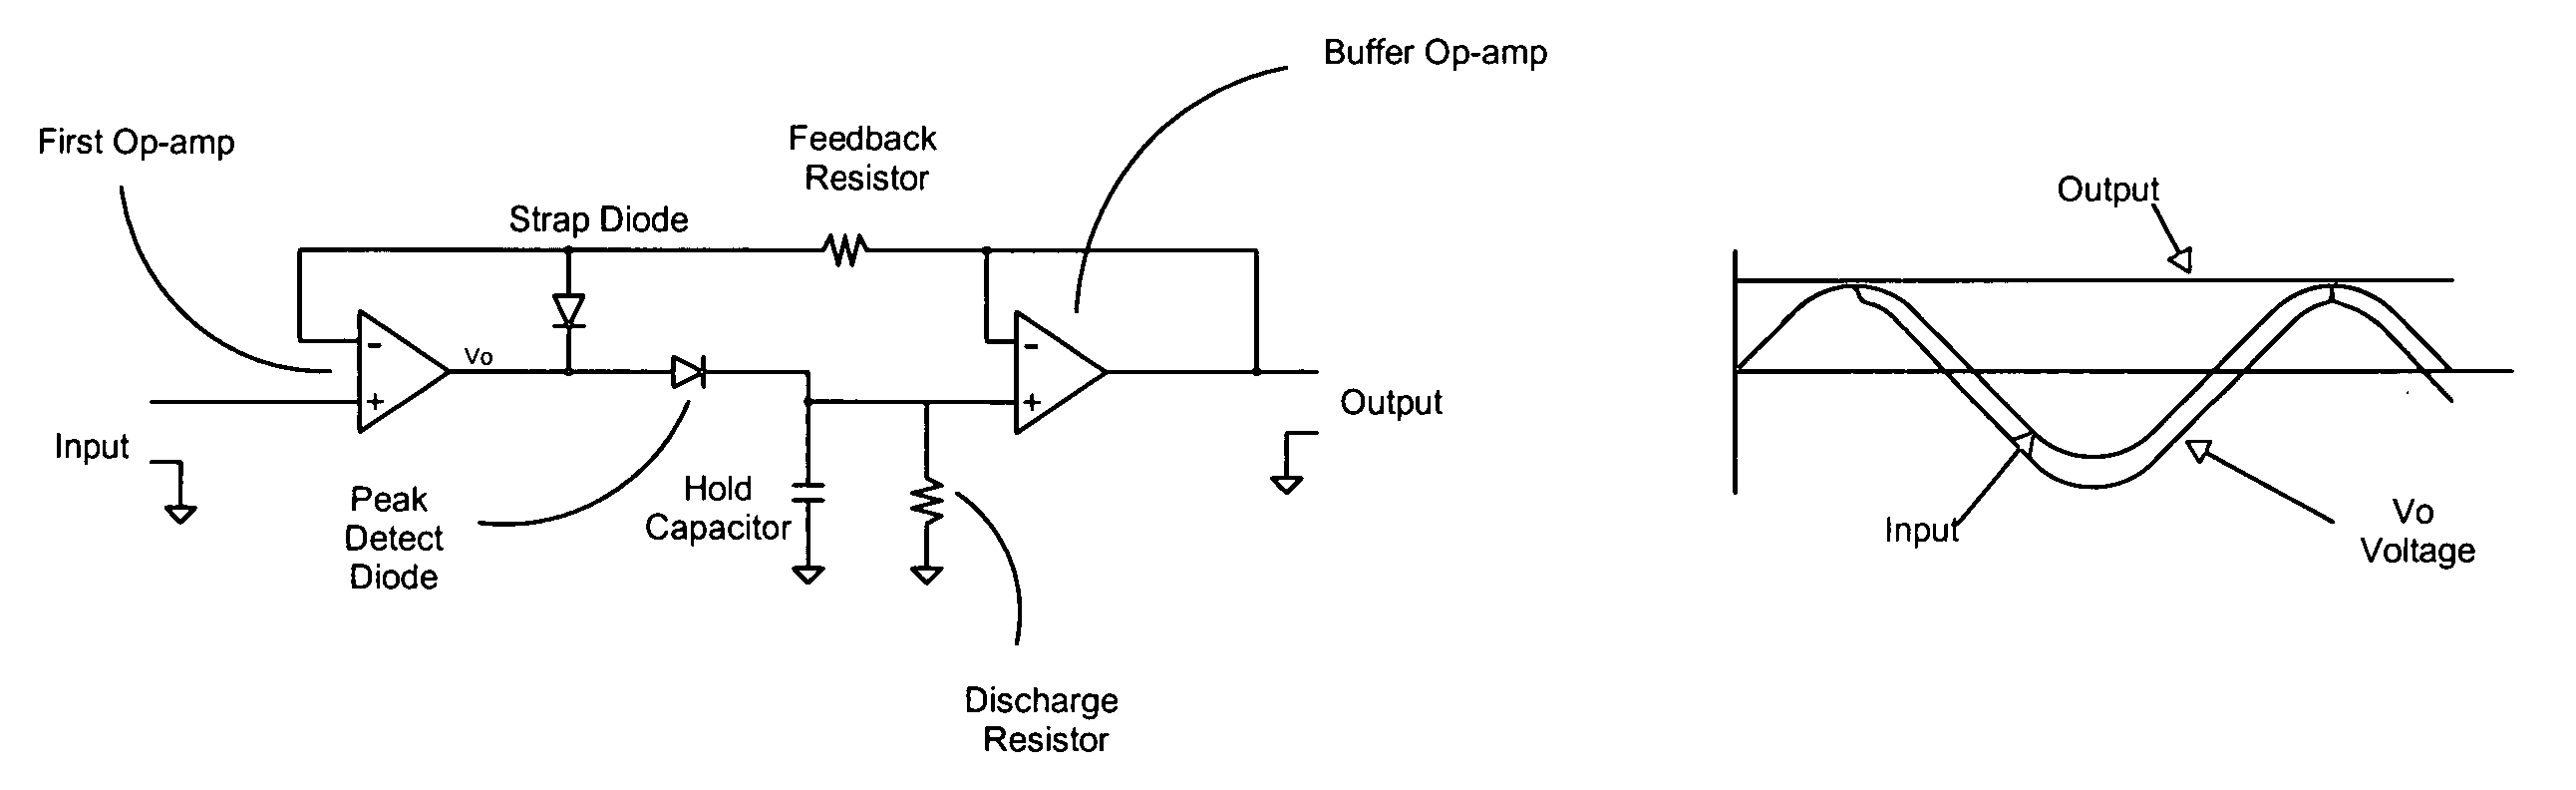 Fast peak detector circuit